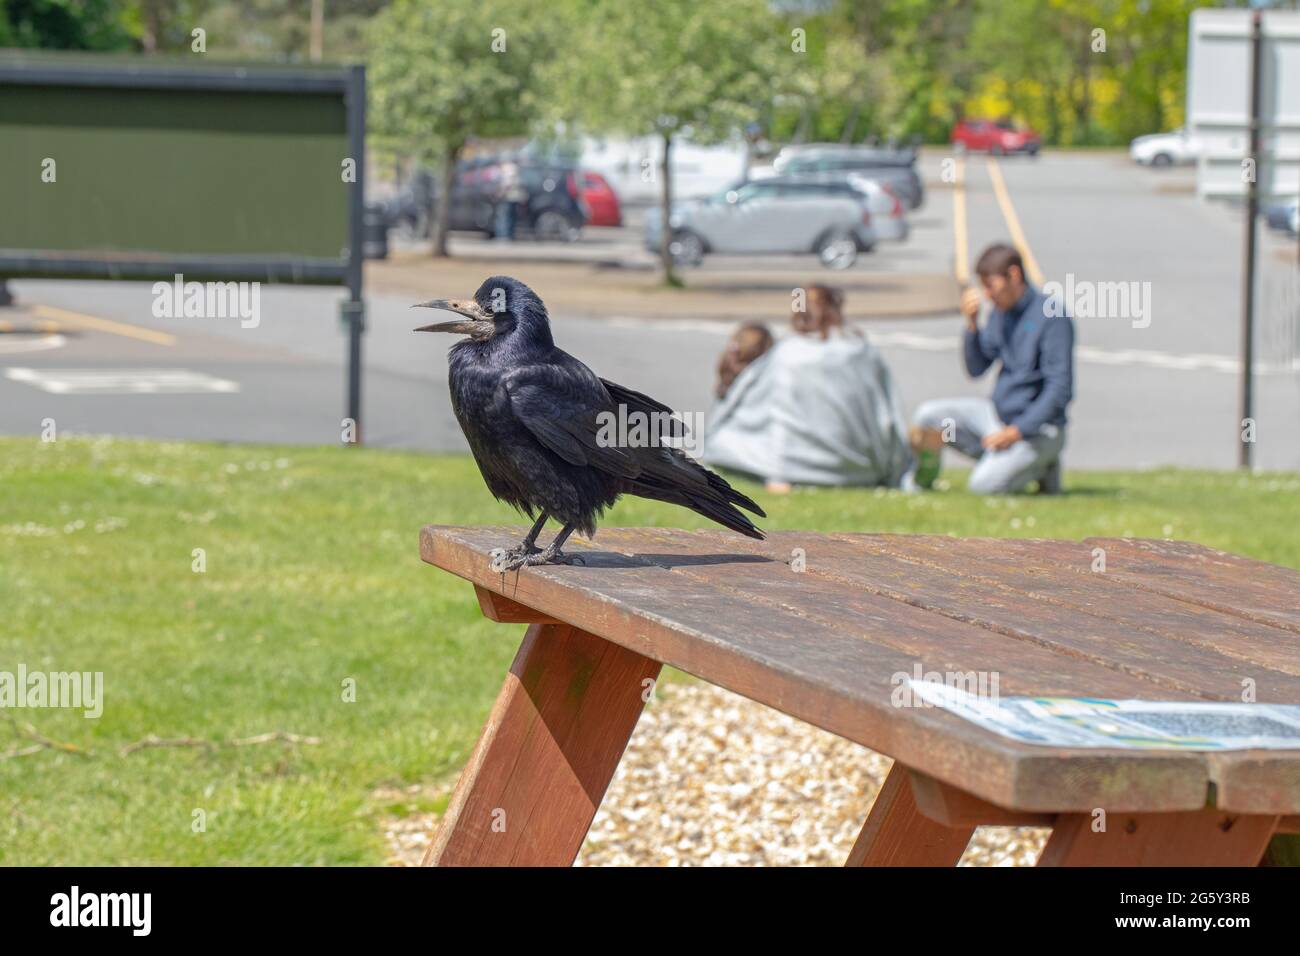 Rook (Corvus frugilegus). In piedi su un tavolo da picnic e chiamando, presso una stazione di servizio autostradale, in attesa di raccogliere e raccogliere rifiuti alimentari che può b Foto Stock